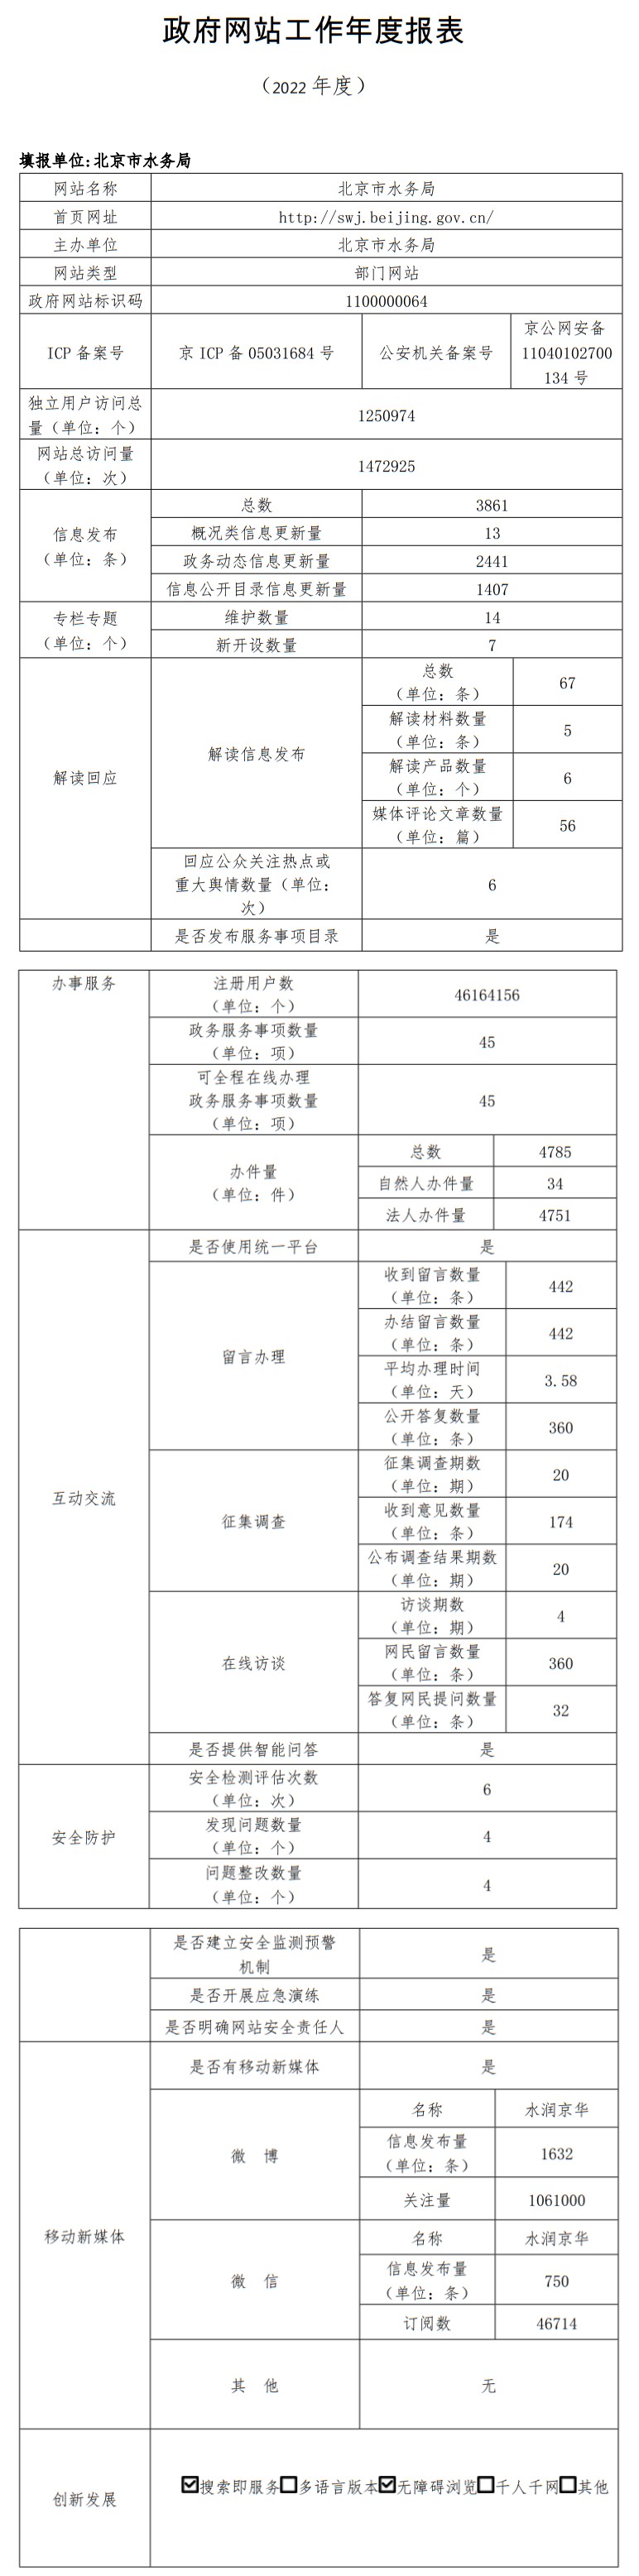 北京市水務局2022年政府網站年度工作報表